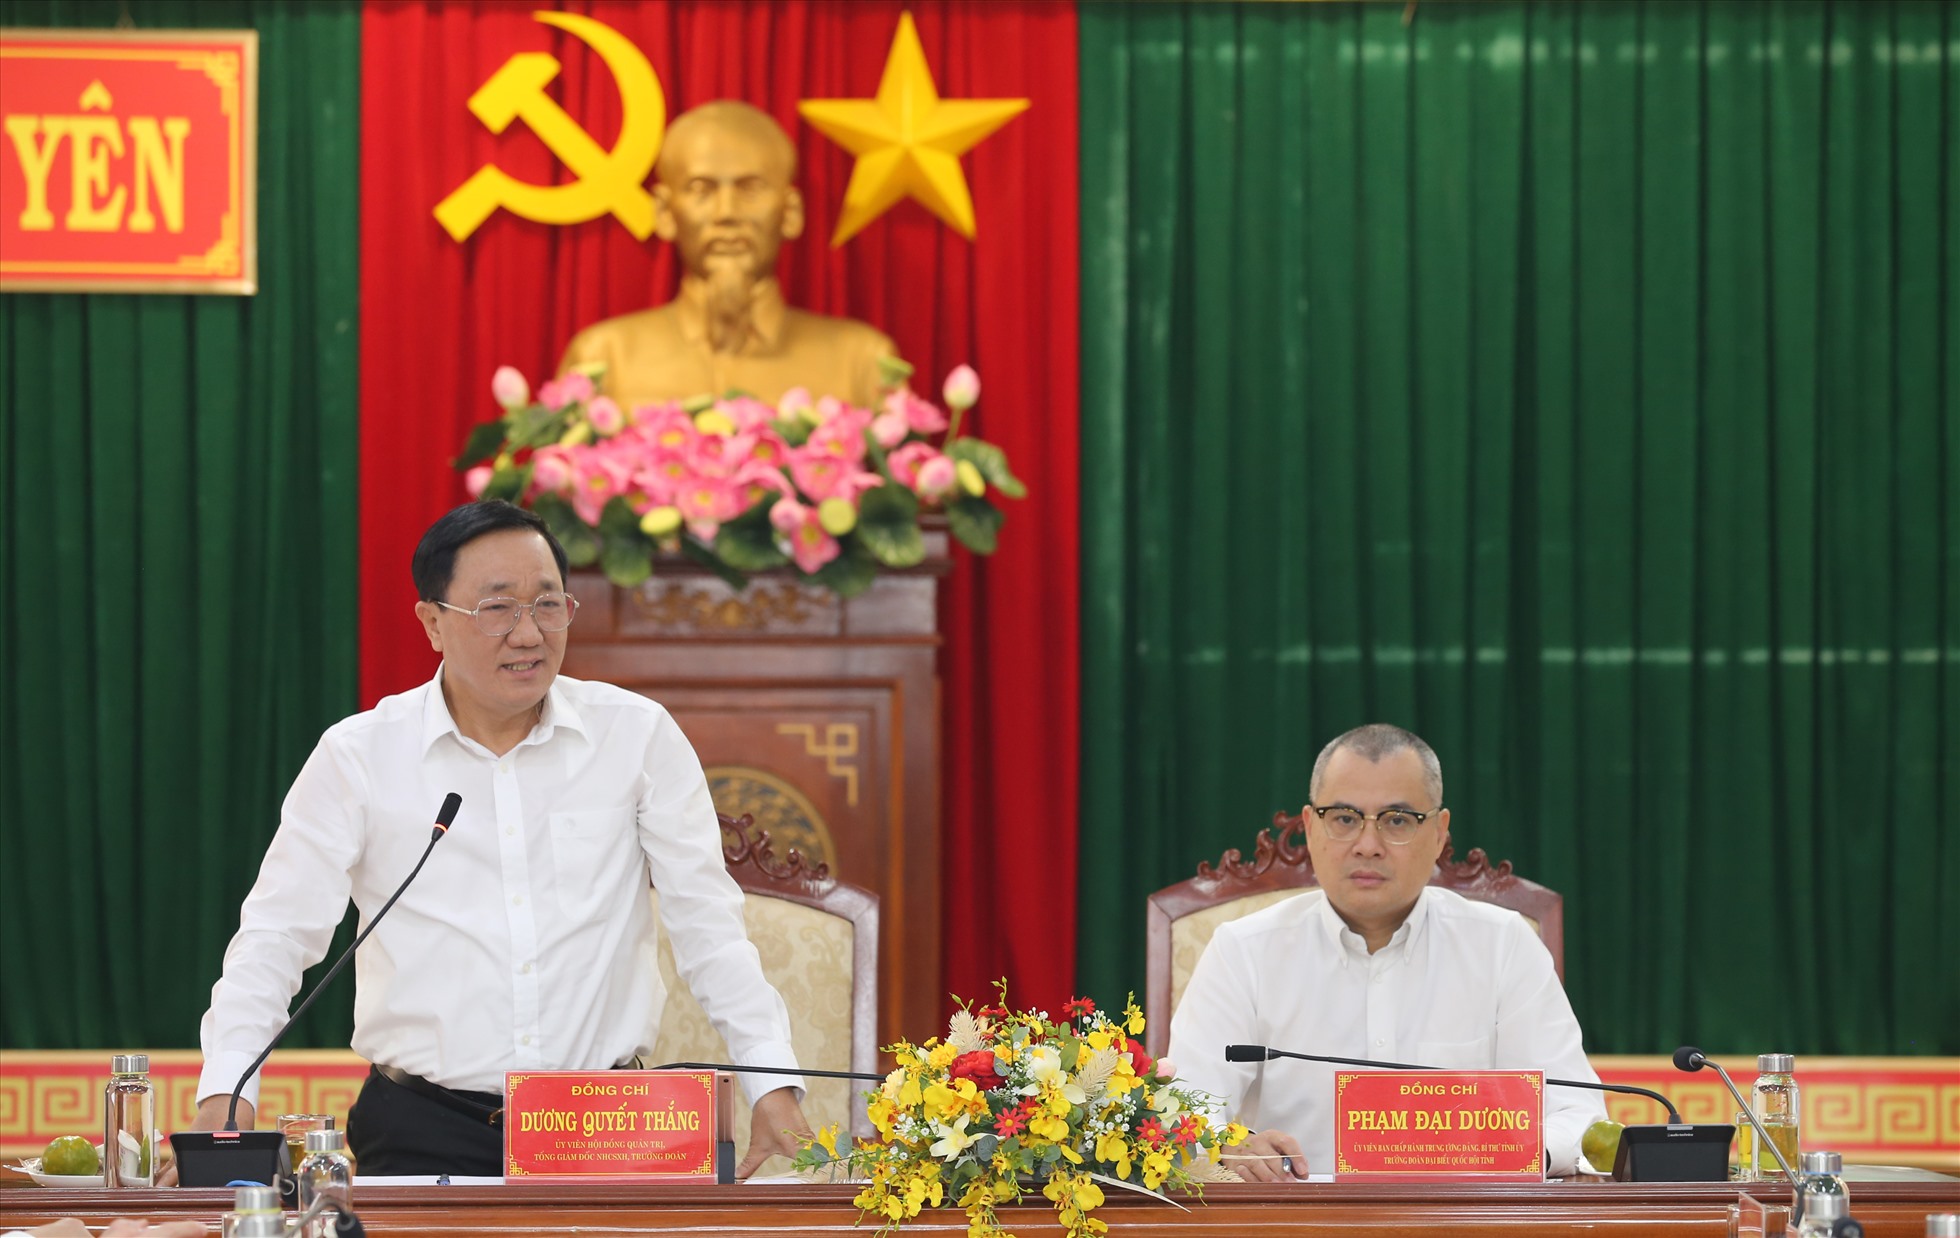 Tổng Giám đốc Dương Quyết Thắng phát biểu tại buổi làm việc với Thường trực Tỉnh uỷ Phú Yên. Ảnh: Việt Hải